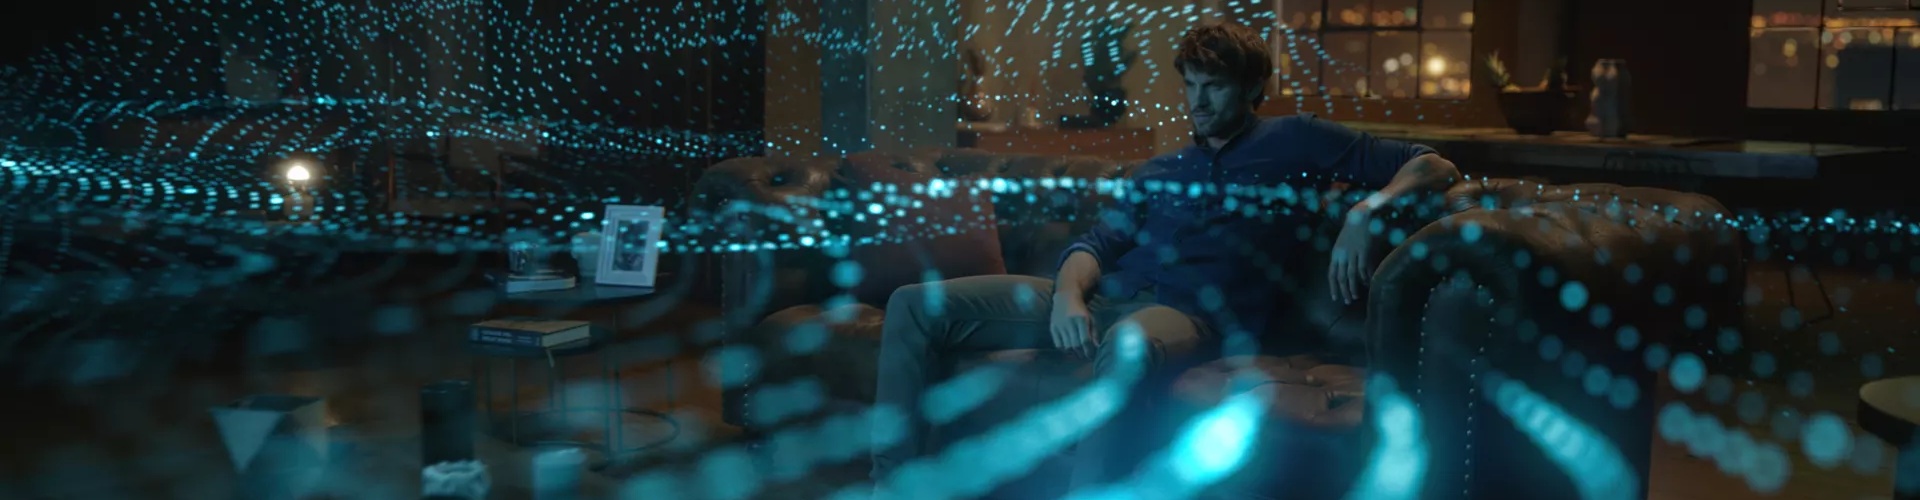 Homme dans un salon regardant la télévision avec les ondes sonores qui représentent la technologie Dolby Atmos émanant de la barre de son Bose